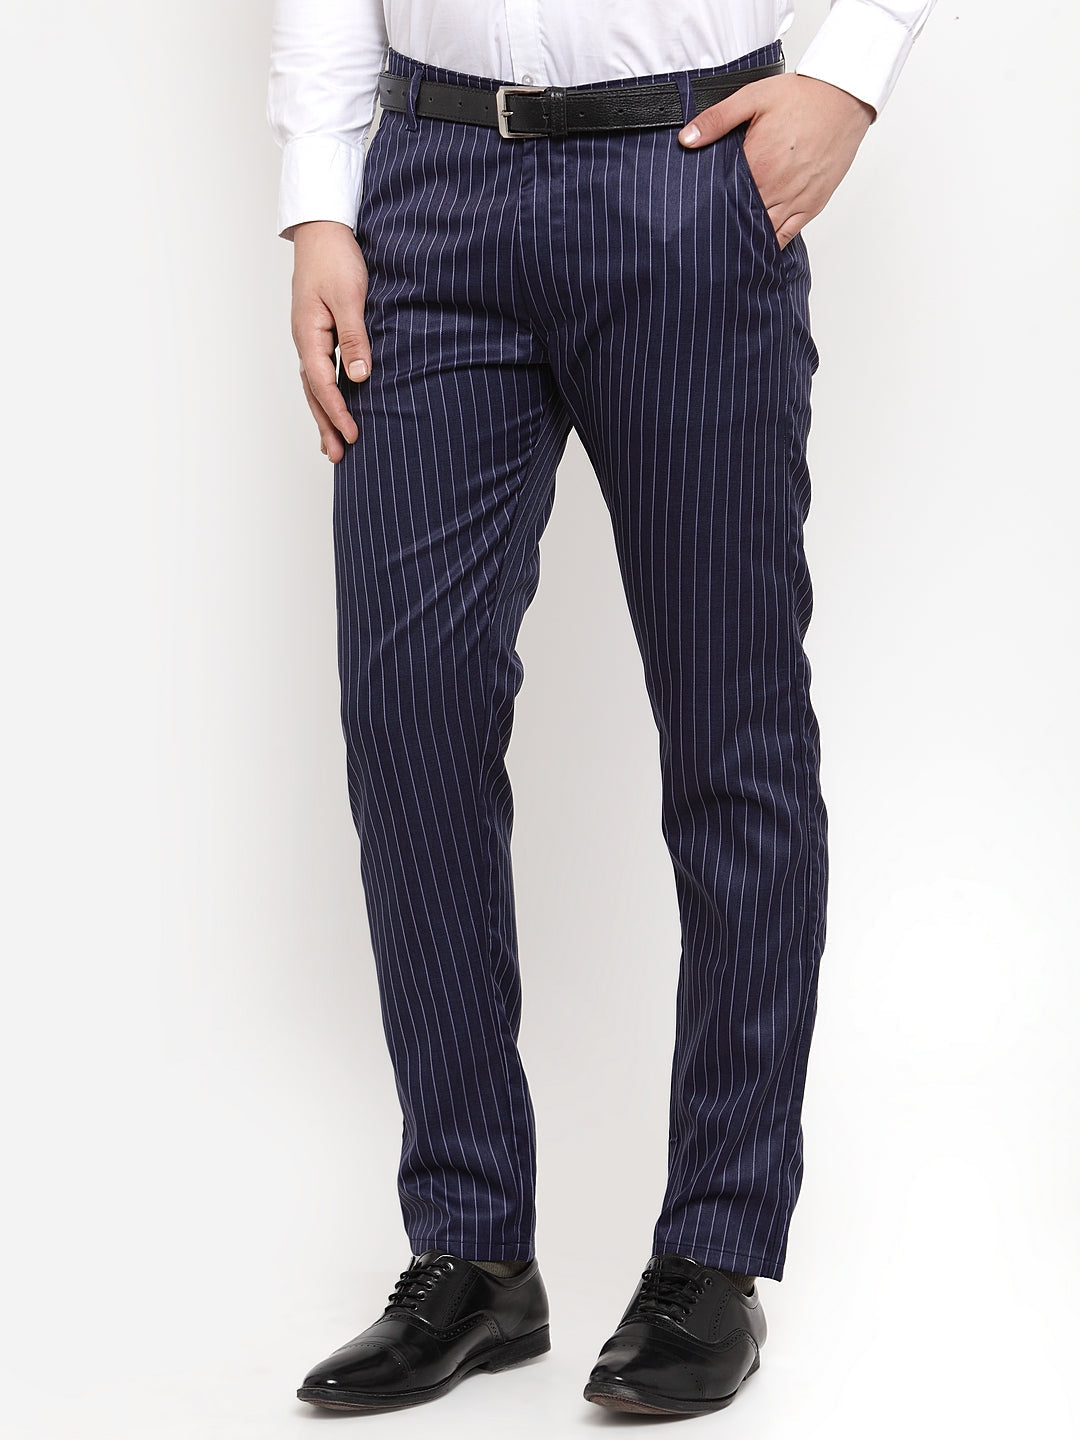 Men's Blue Cotton Striped Formal Trousers ( FGP 255Navy-Blue ) - Jainish